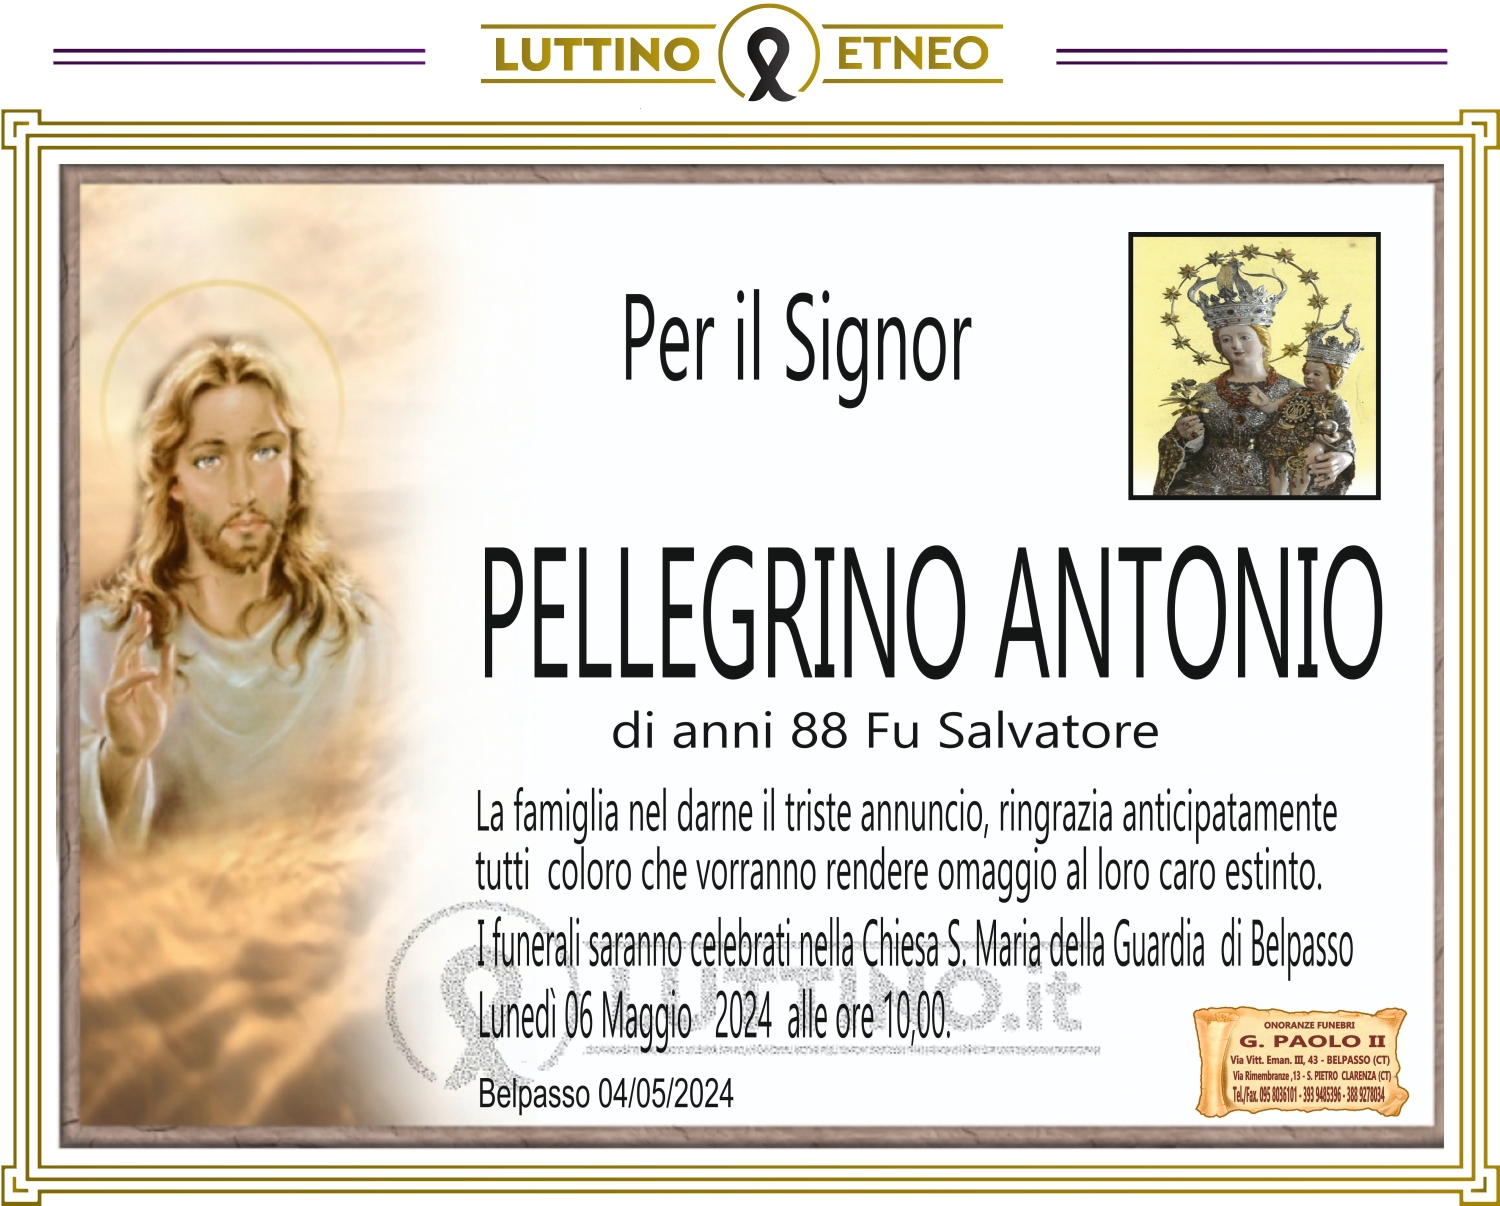 Antonio Pellegrino